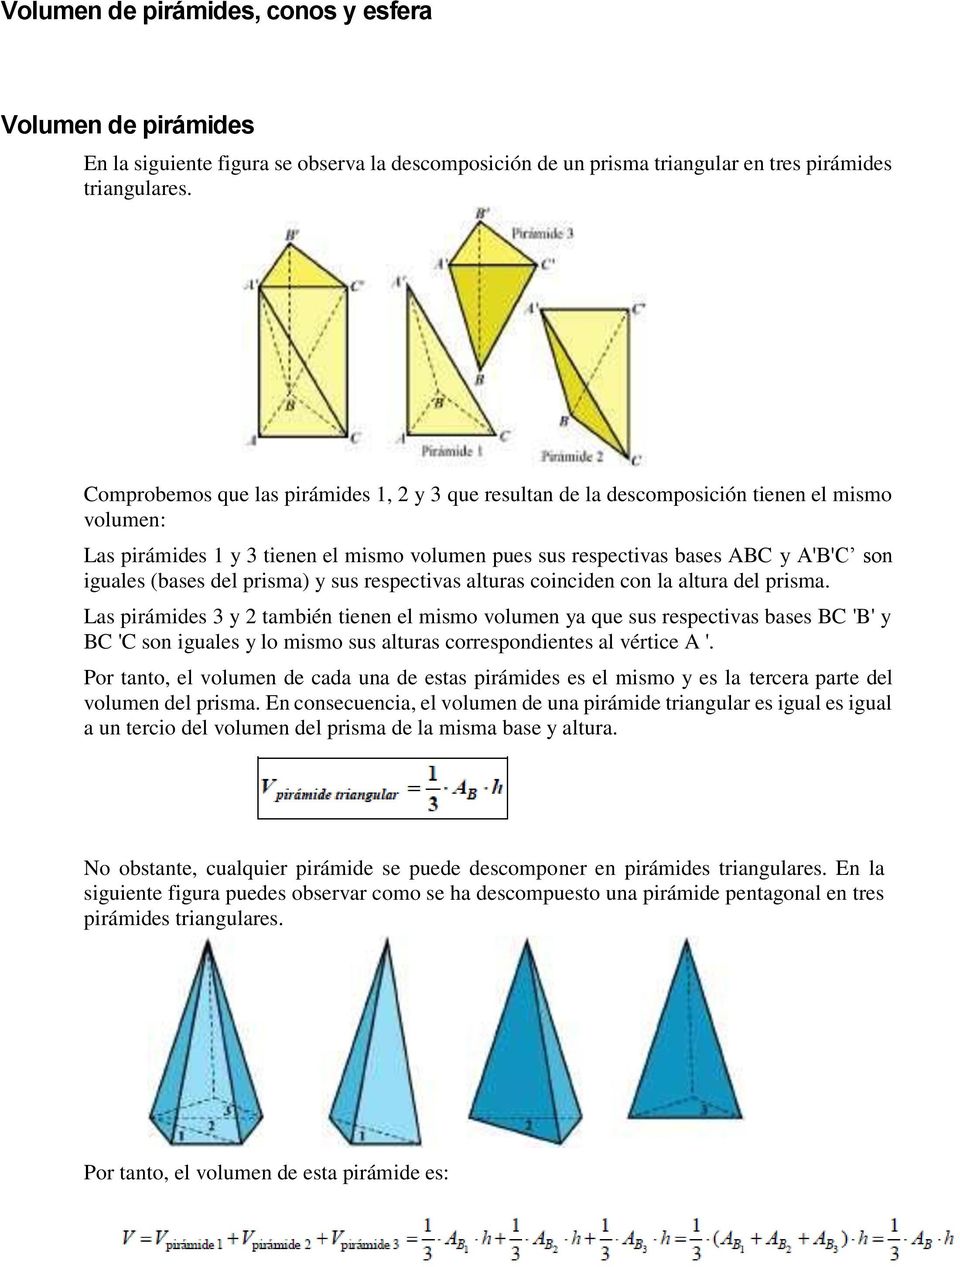 del prisma) y sus respectivas alturas coinciden con la altura del prisma.